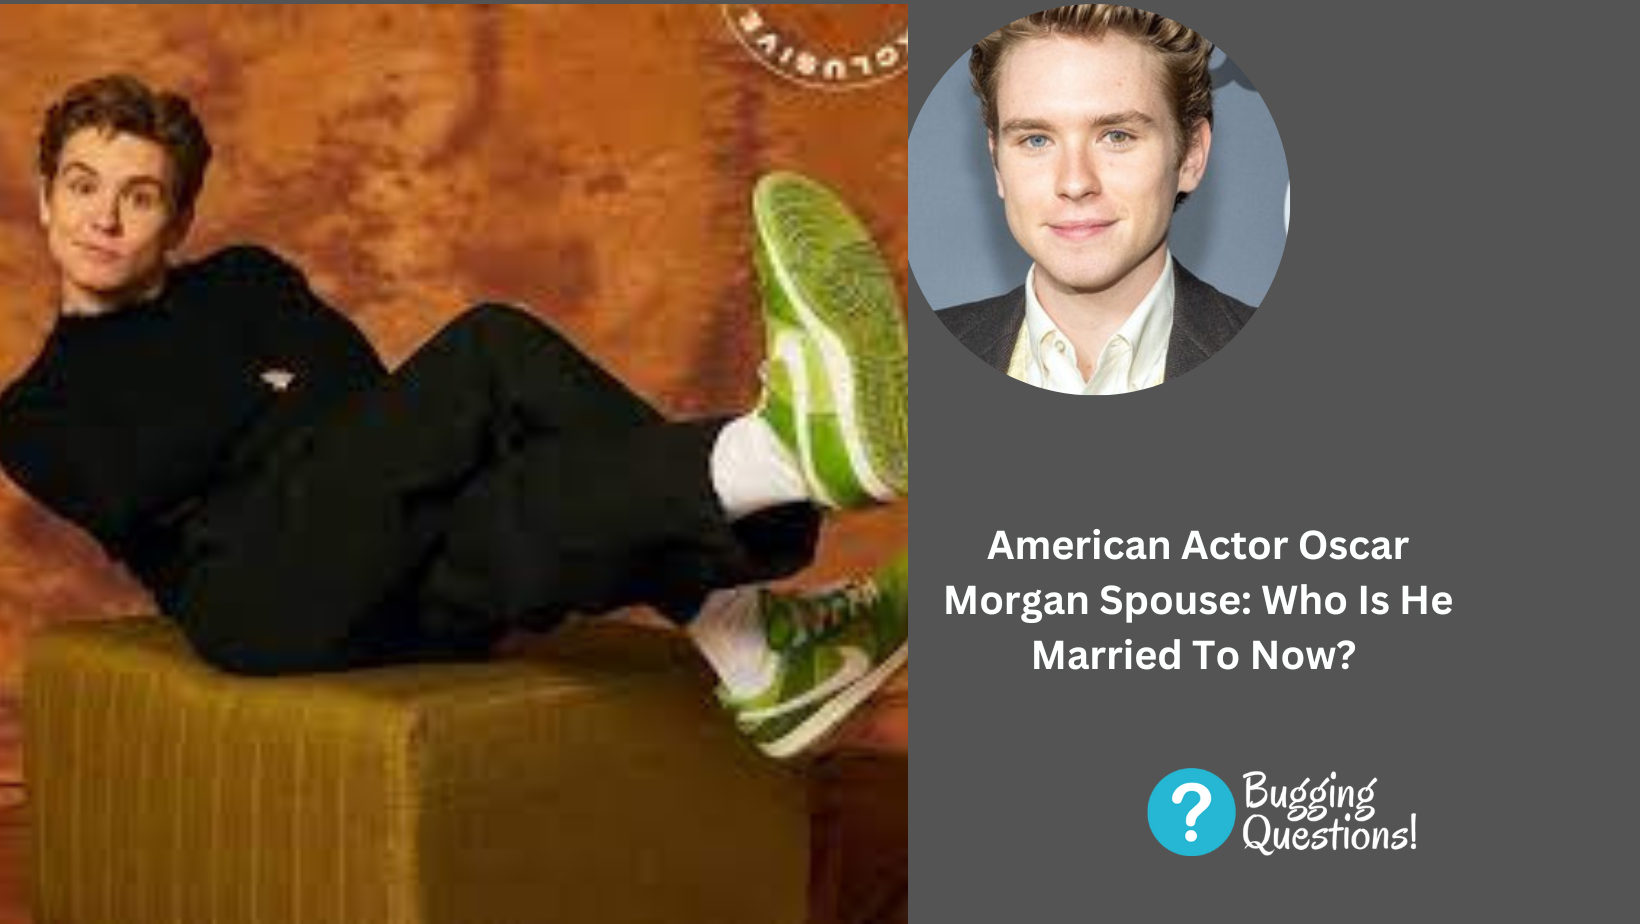 American Actor Oscar Morgan Spouse